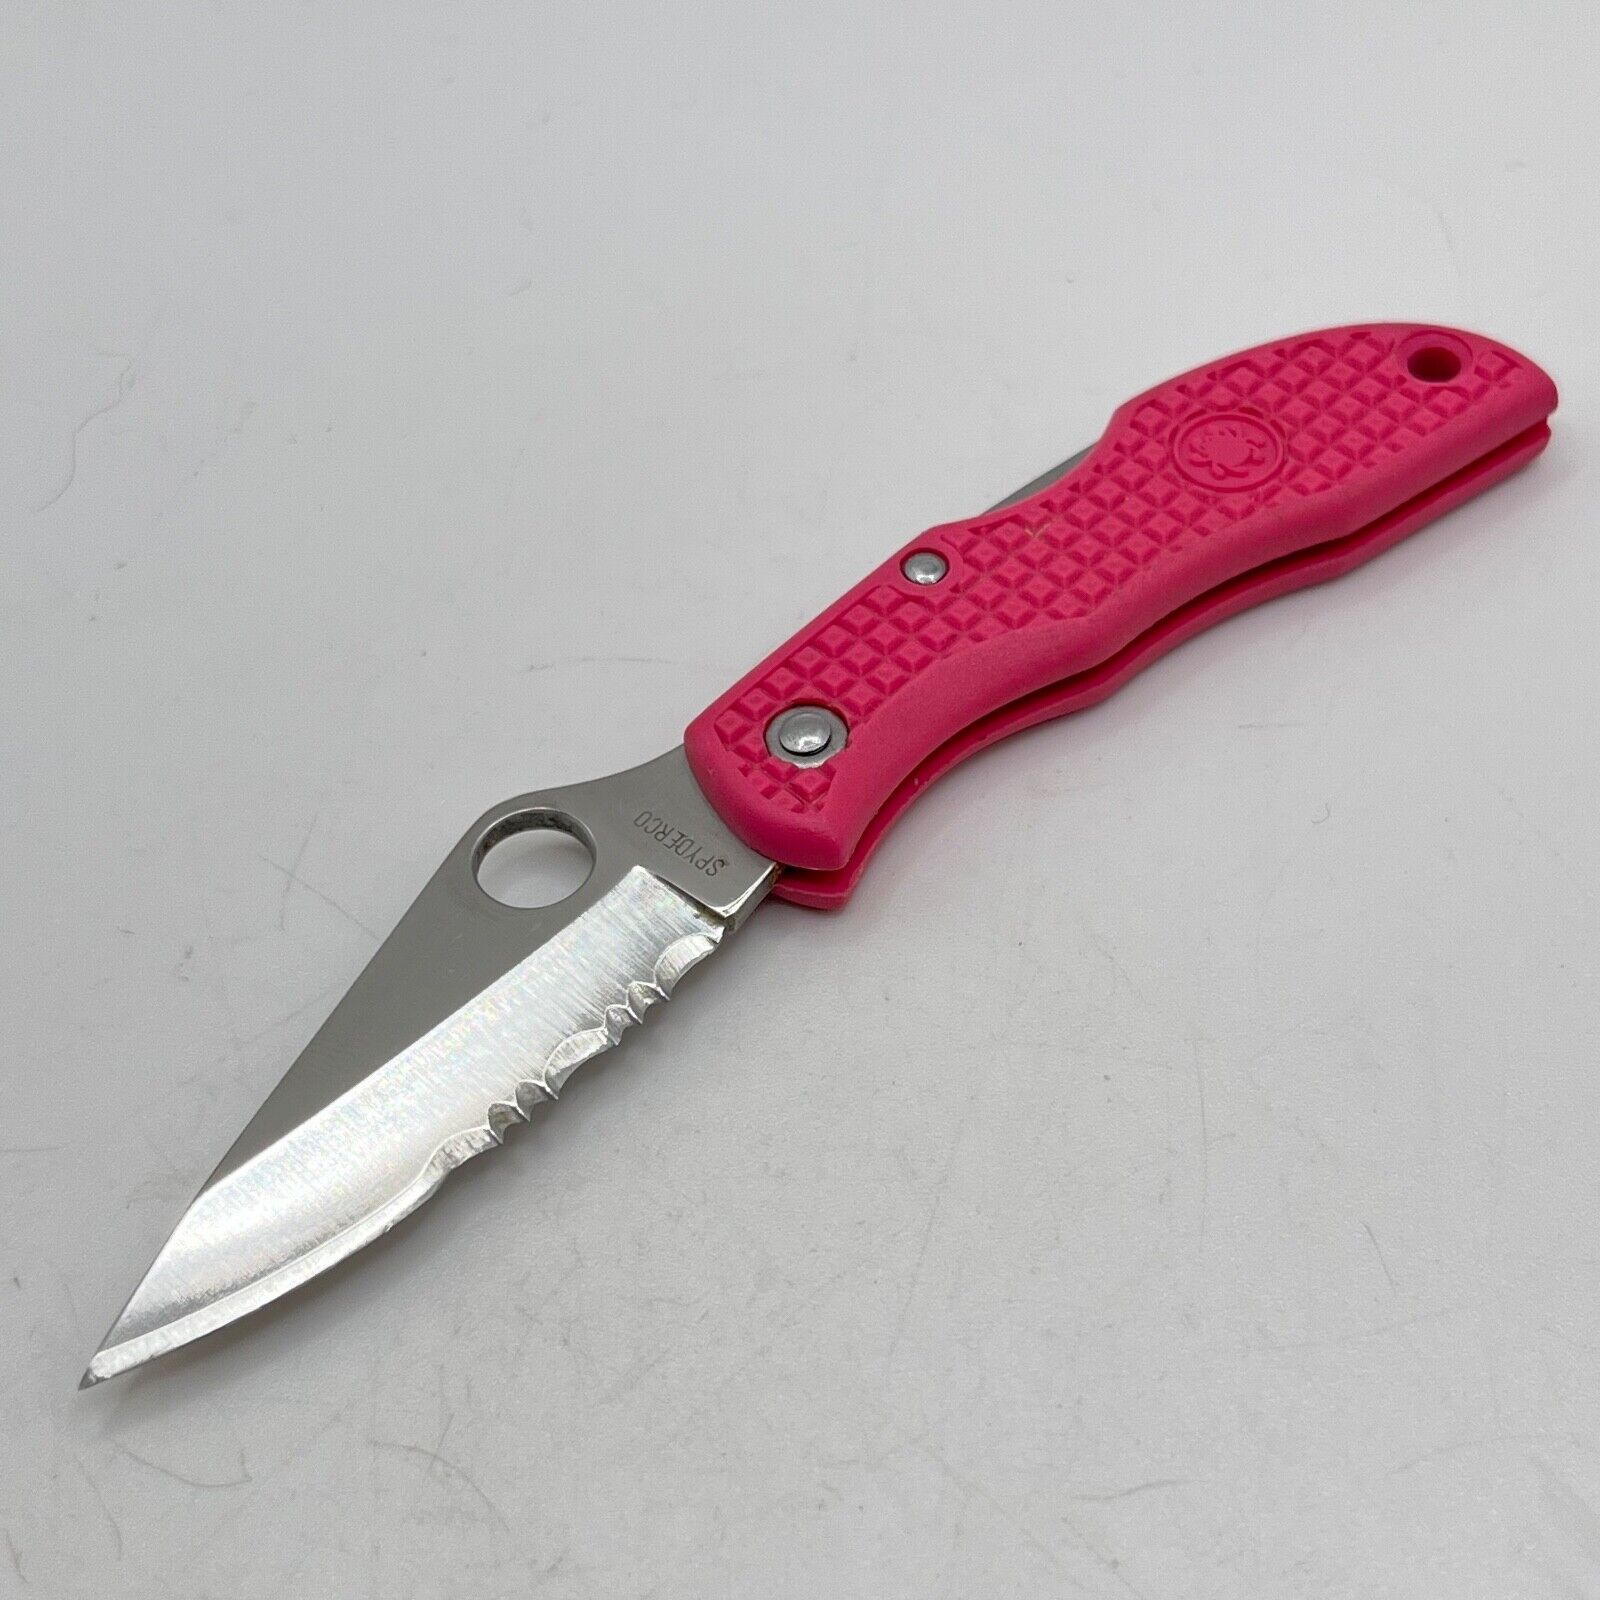 Spyderco Ladybug Pink Original First Gen Pocket Knife Vintage Rare